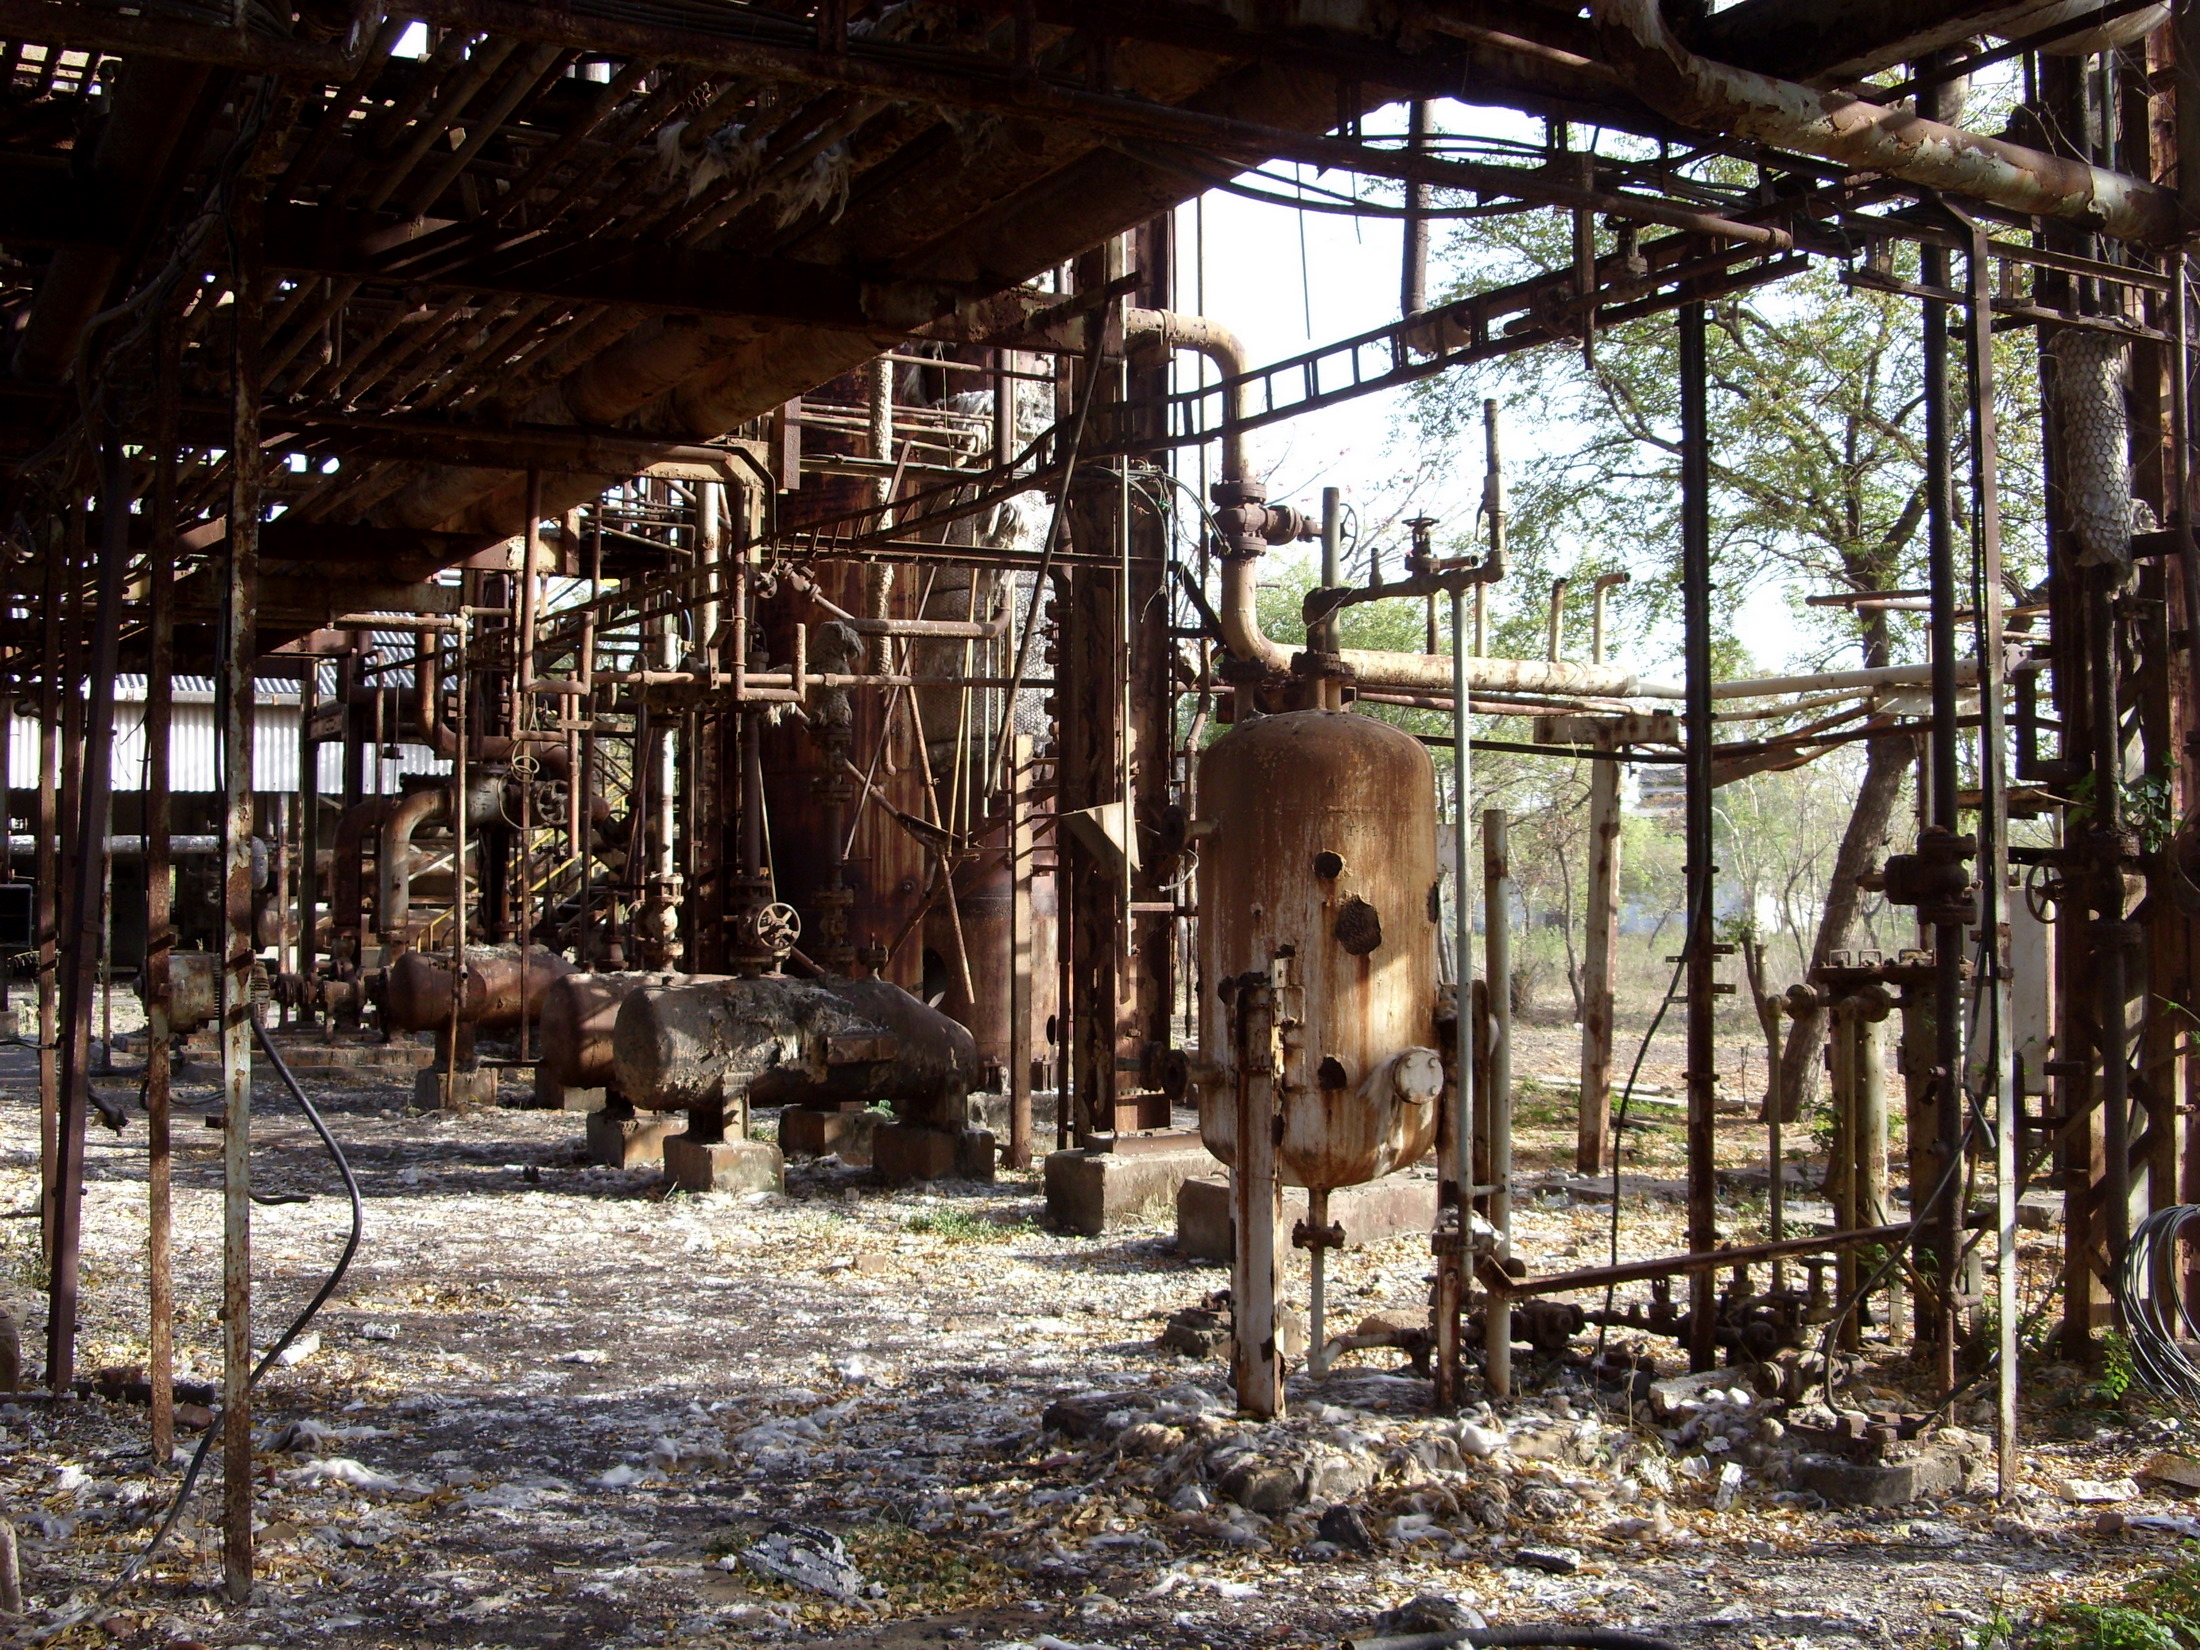 Bhopal gas tragedy case study